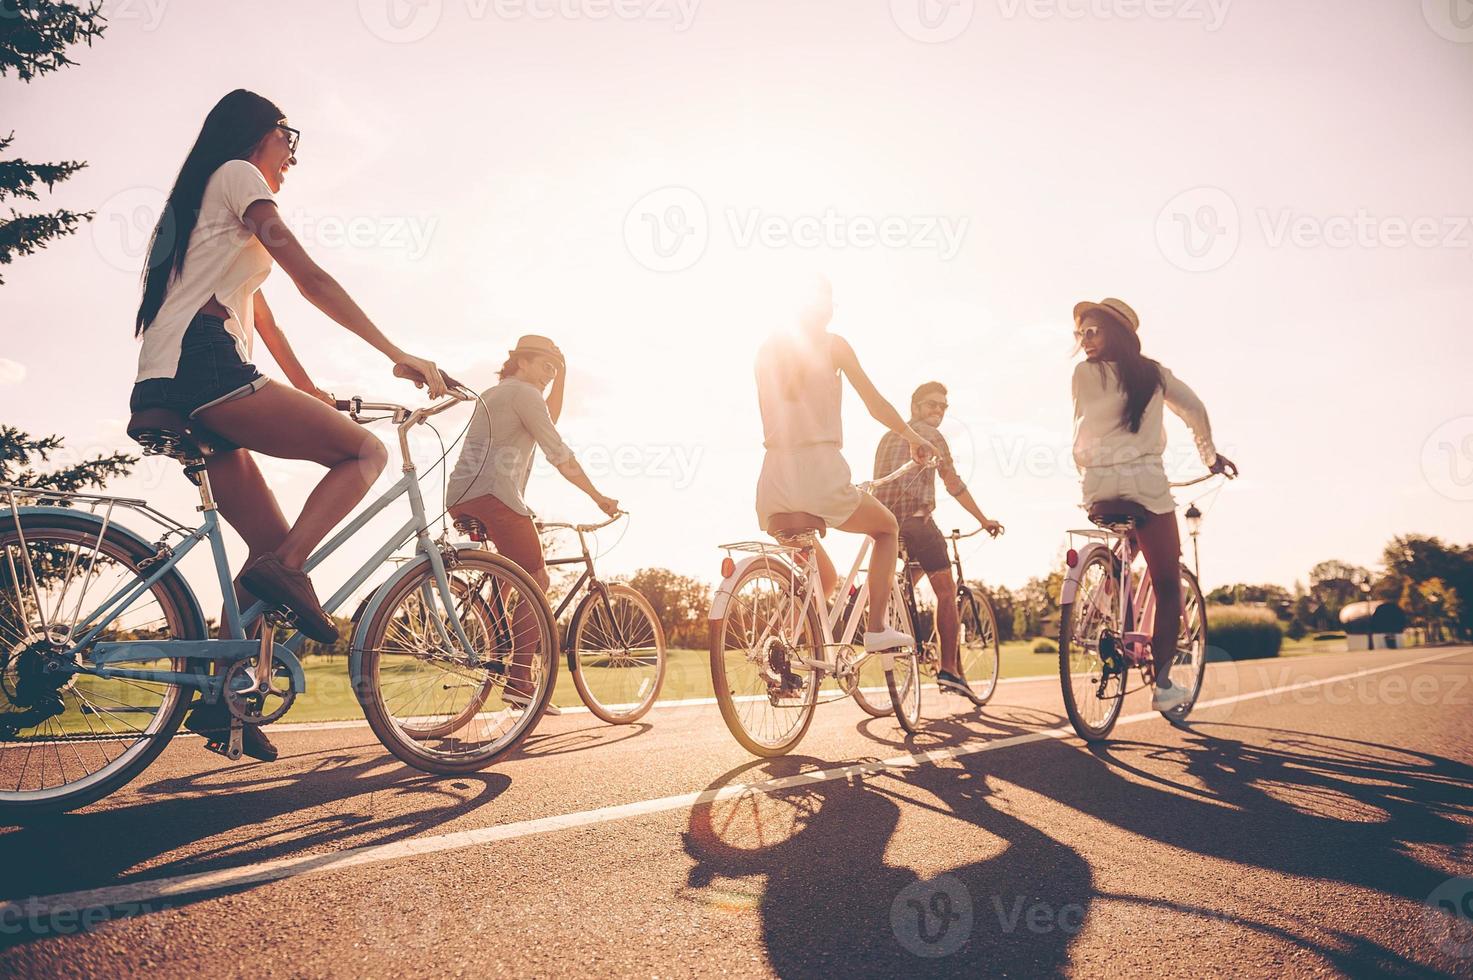 Freiheit genießen. Low Angle View von jungen Leuten, die Fahrräder entlang einer Straße fahren und glücklich aussehen foto